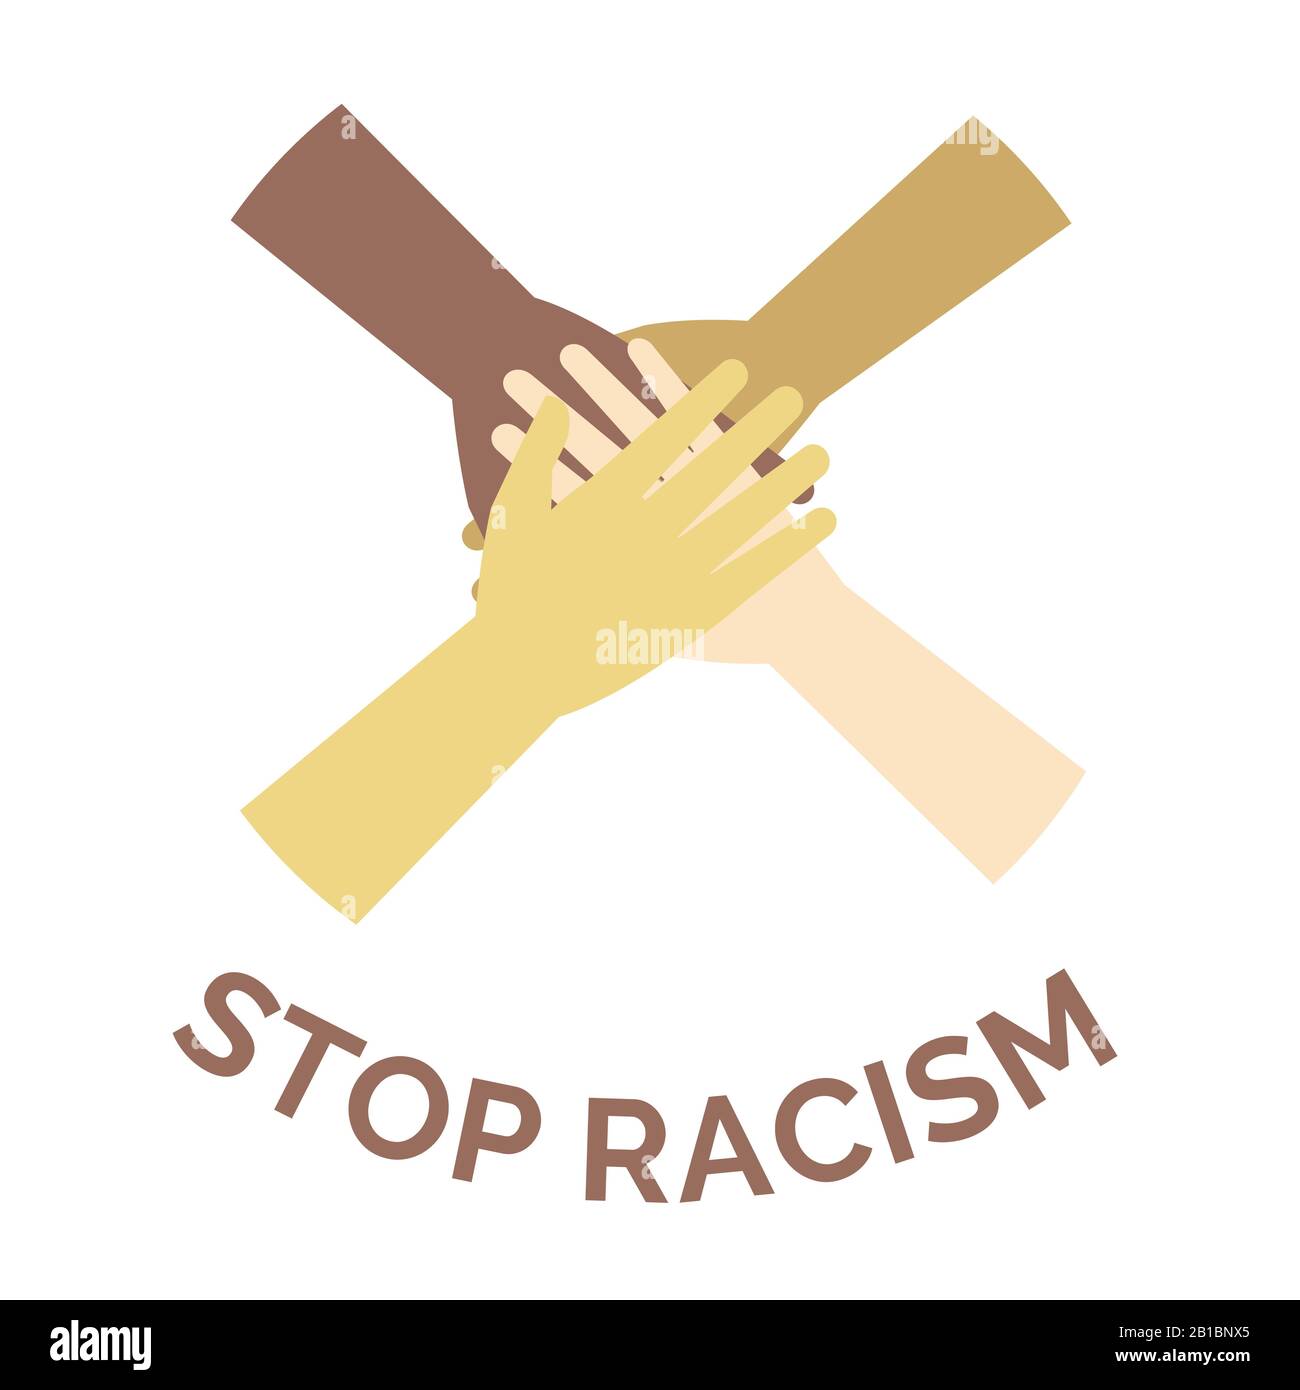 Arrestare il concetto di banner vettoriale razzista. Mani di diversi colori della pelle e razze diverse persone mettendo insieme cartoon illustrazione. Manifesto contro il razzismo e la discriminazione, tutti gli esseri umani sono uguali. Illustrazione Vettoriale